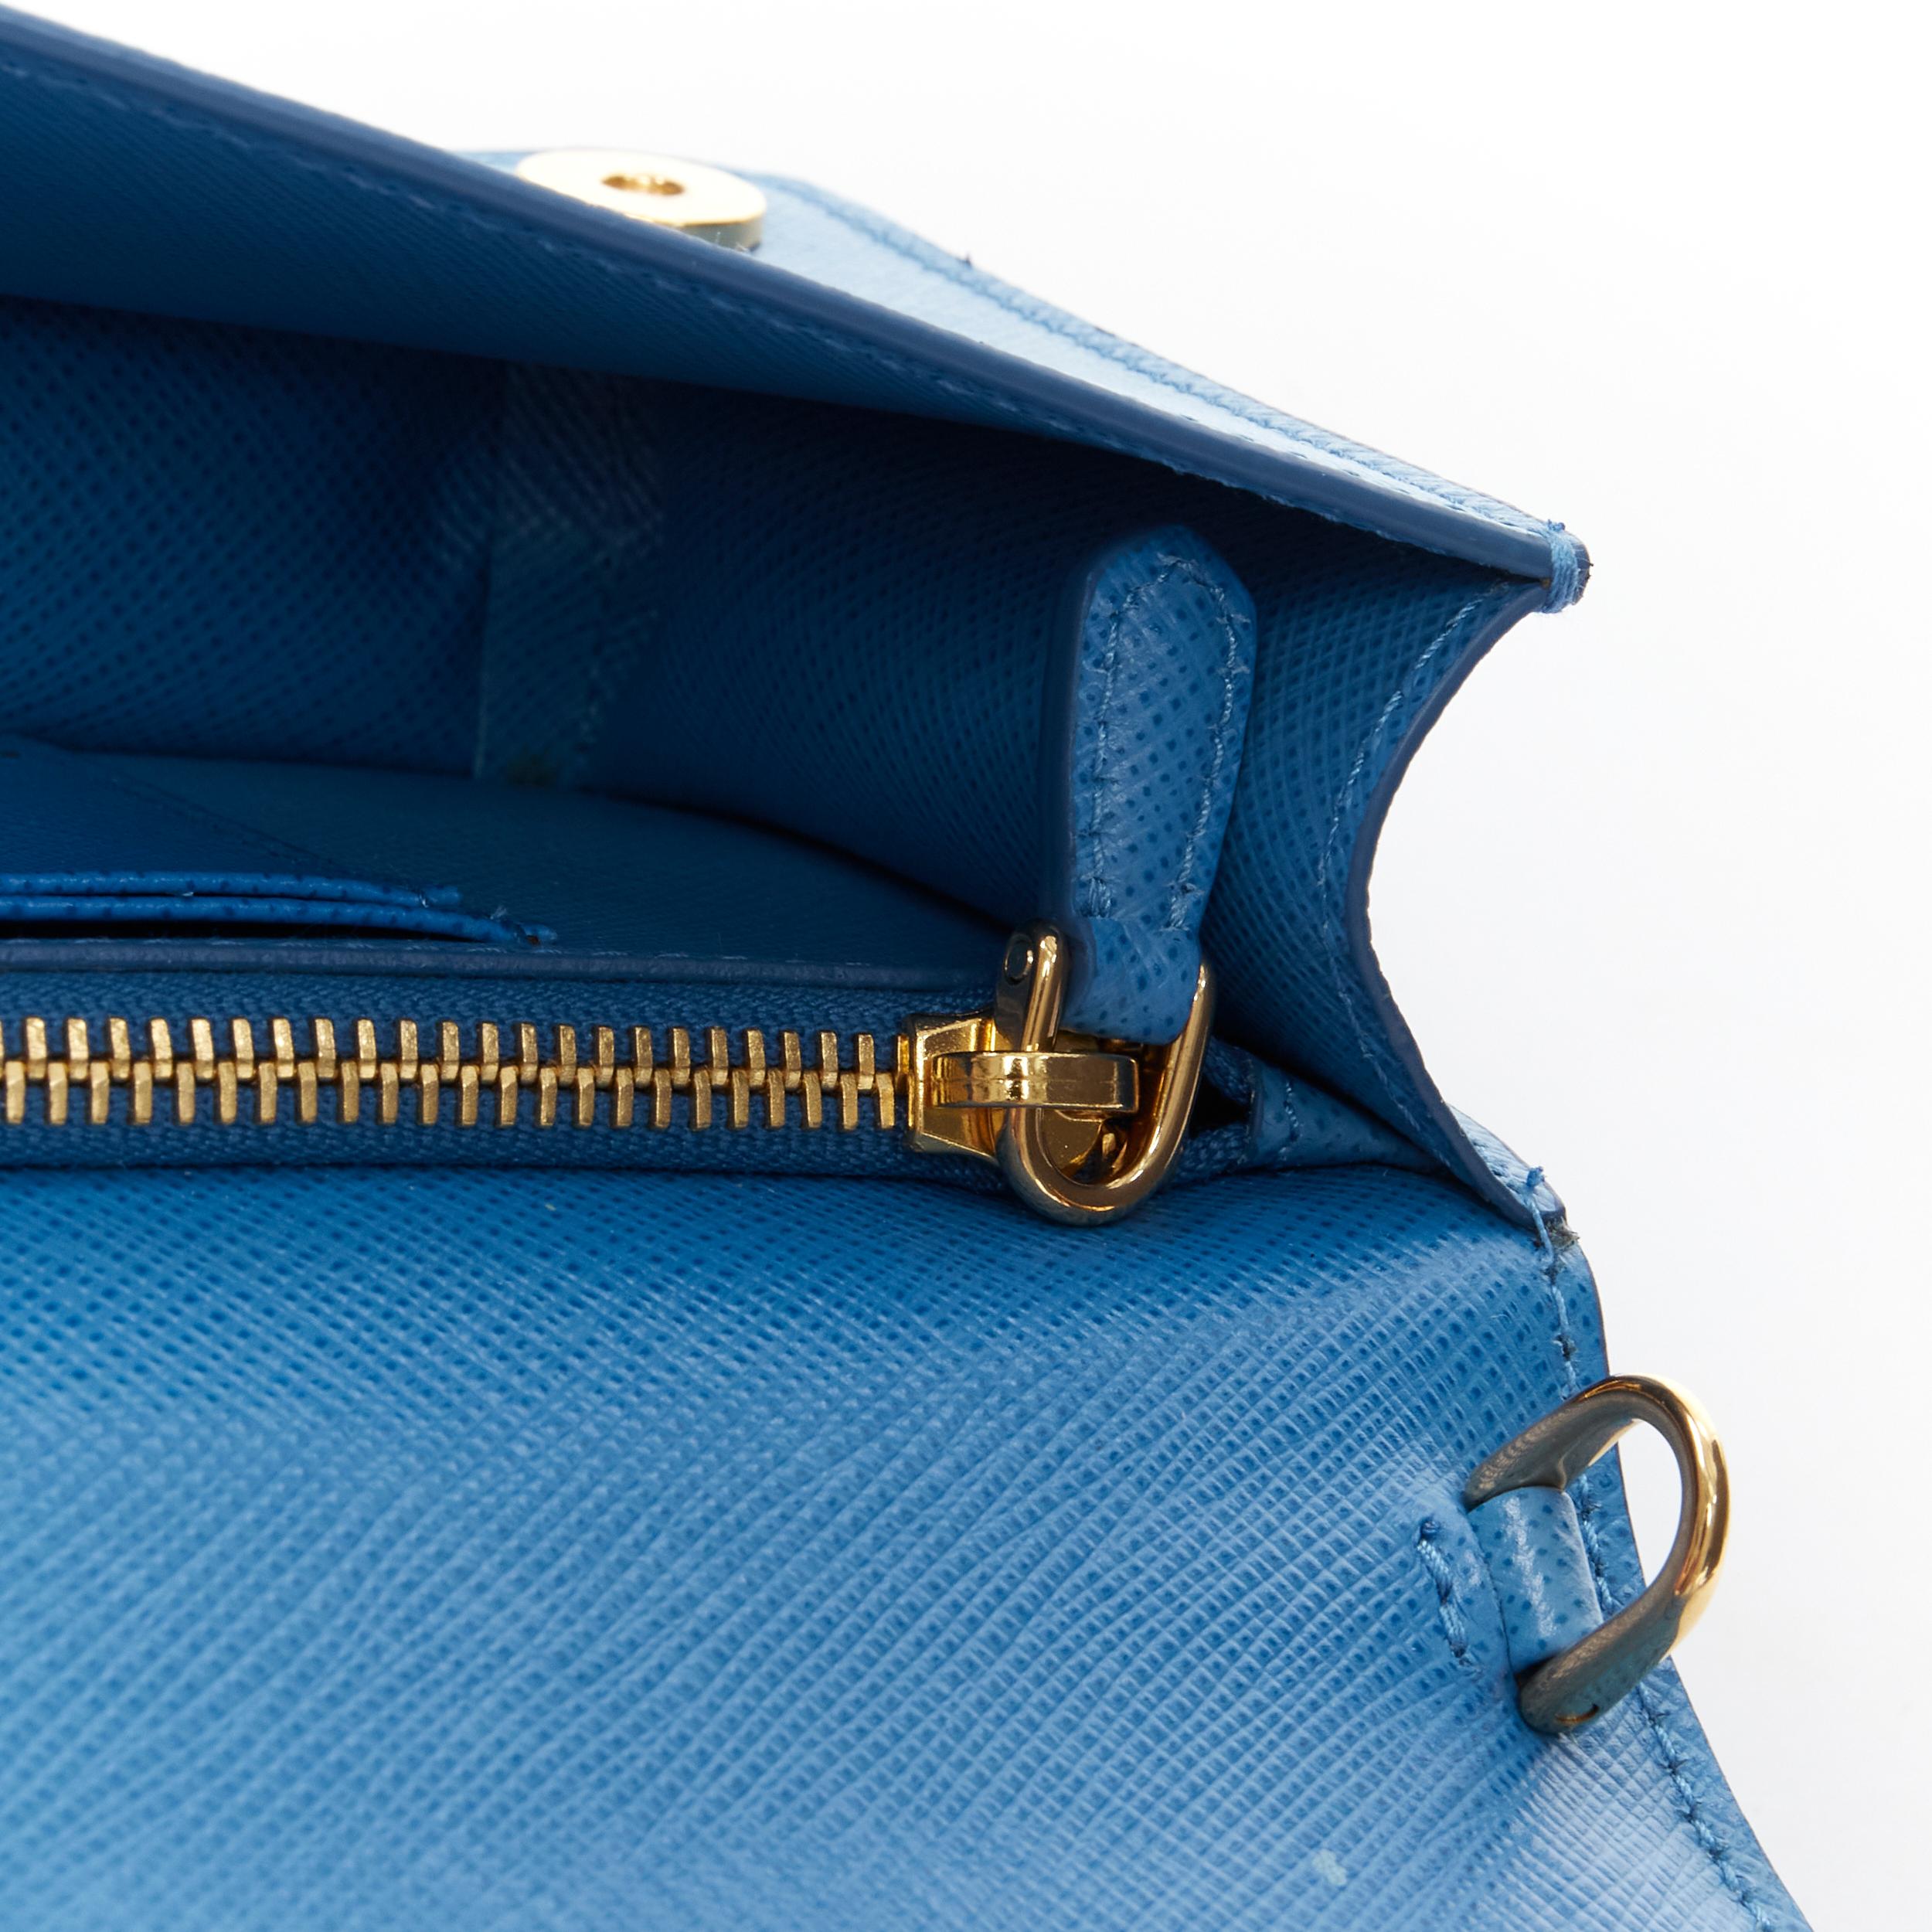 PRADA blue saffiano leather gold logo chain crossbody long wallet clutch bag WOC 2